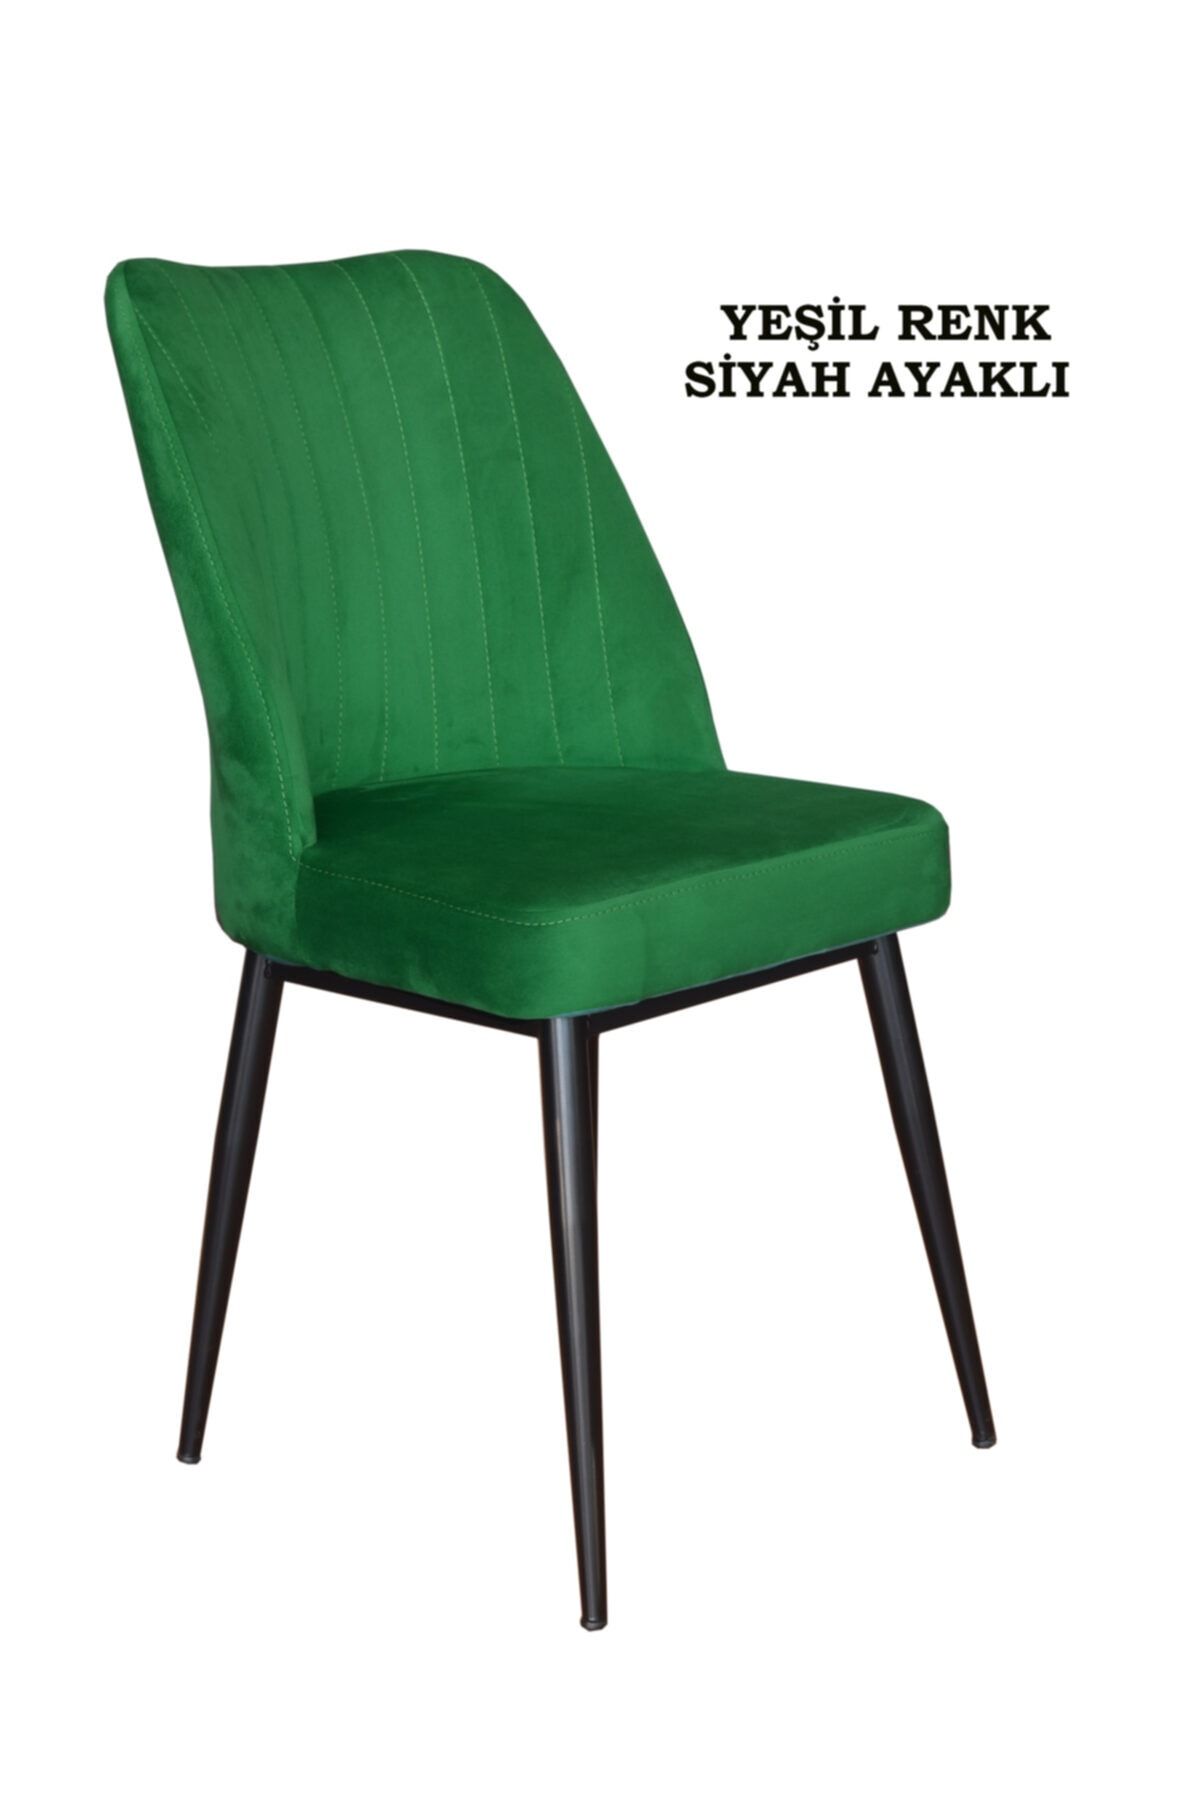 Ankhira Elit Sandalye, Mutfak Ve Salon Sandalyesi, Silinebilir Yeşil Renk Kumaş, Siyah Ayaklı